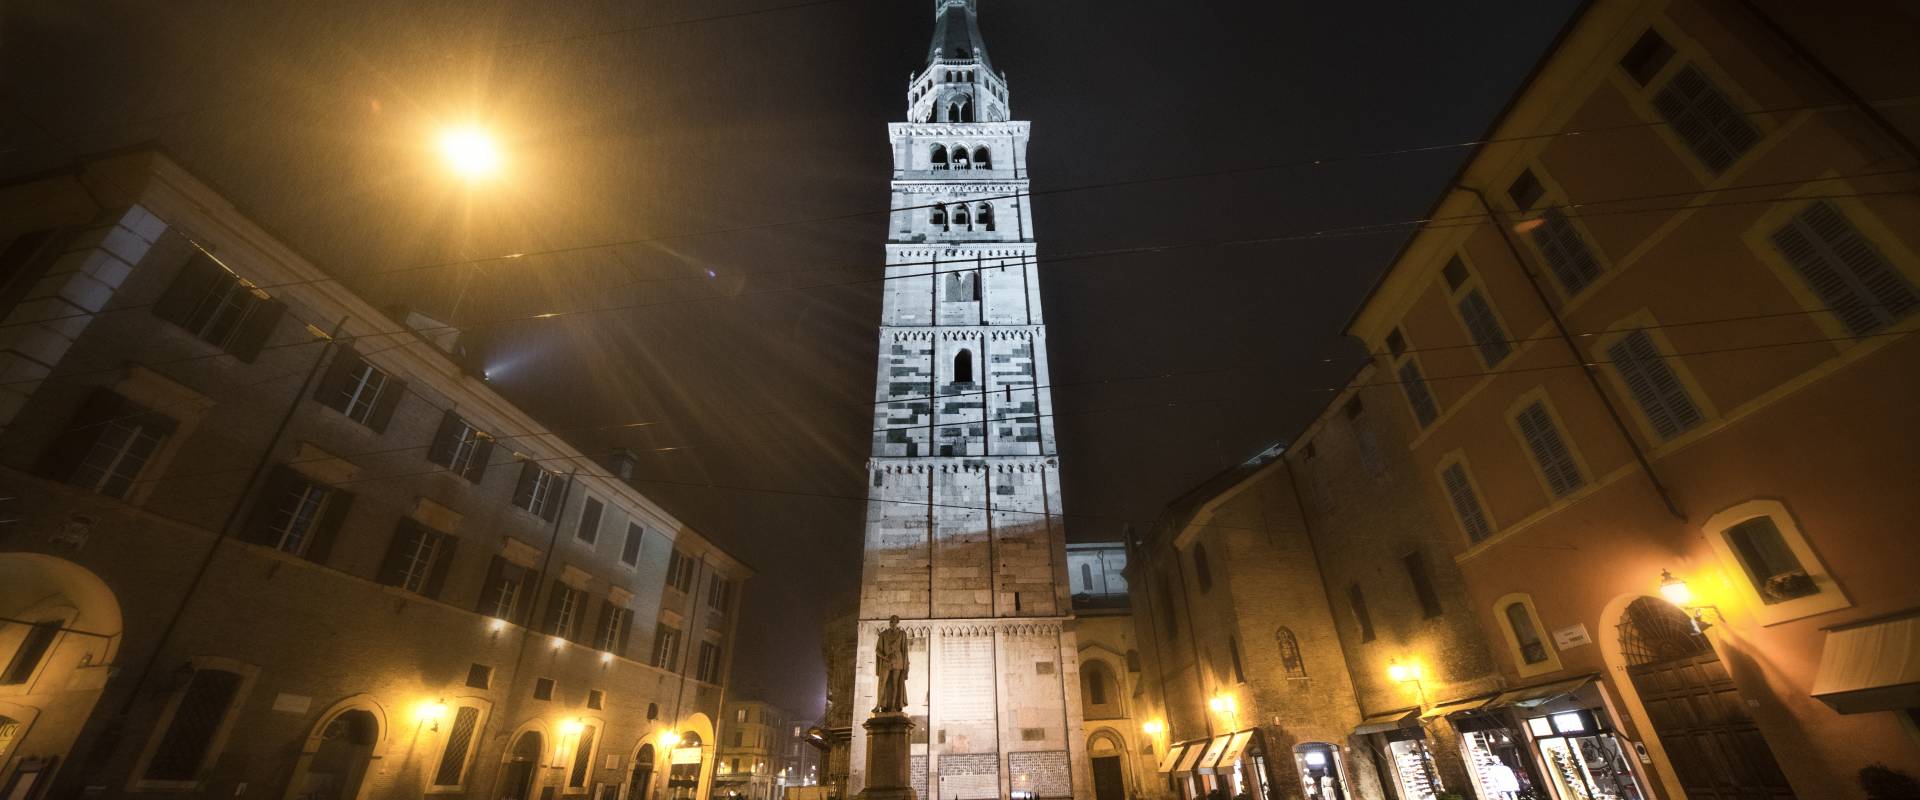 Modena Ghirlandina di notte foto di Lara zanarini